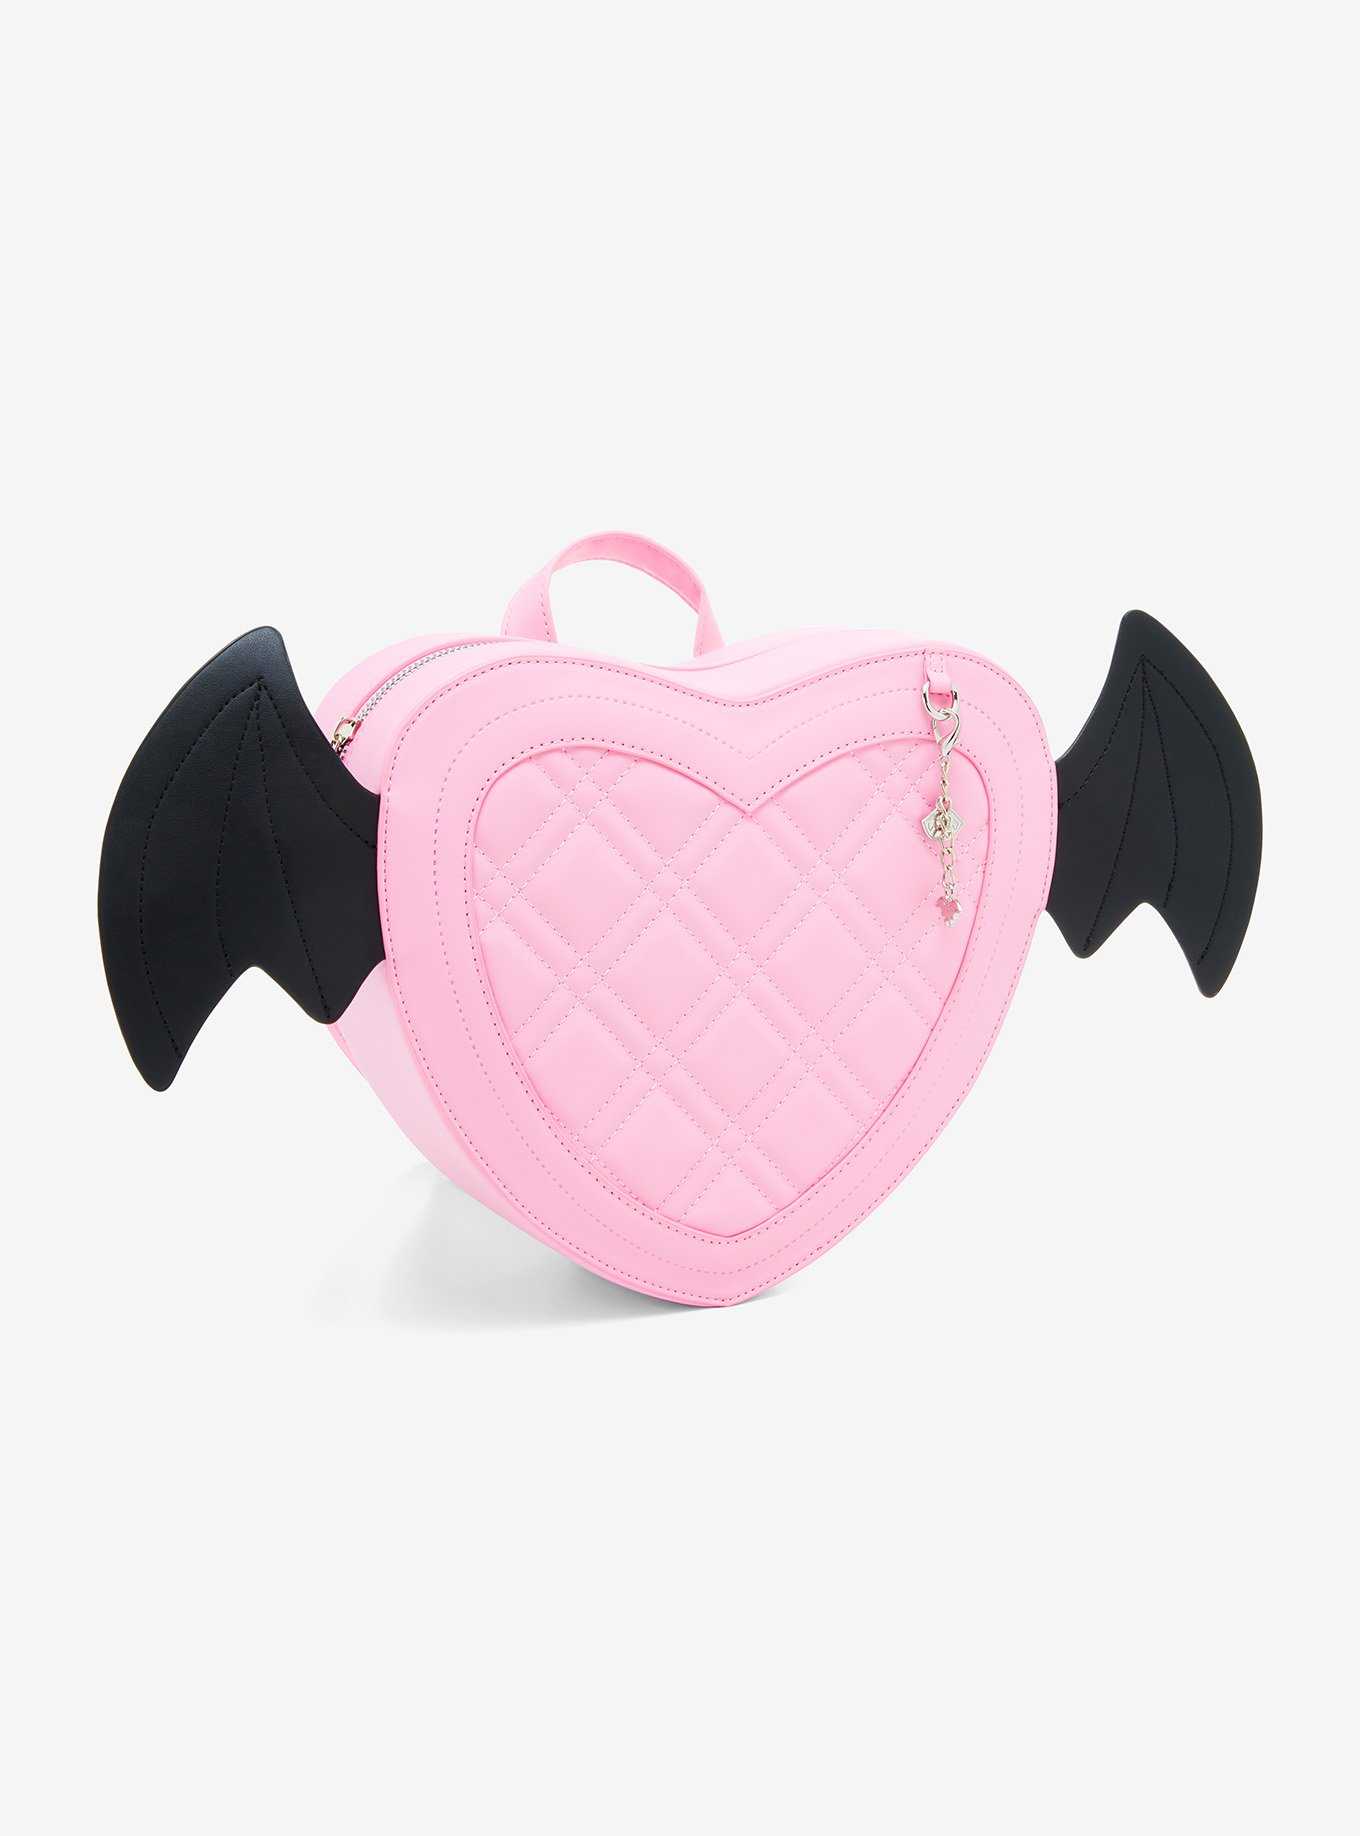 Monster High Draculaura Heart Bat Wings Mini Backpack, , hi-res